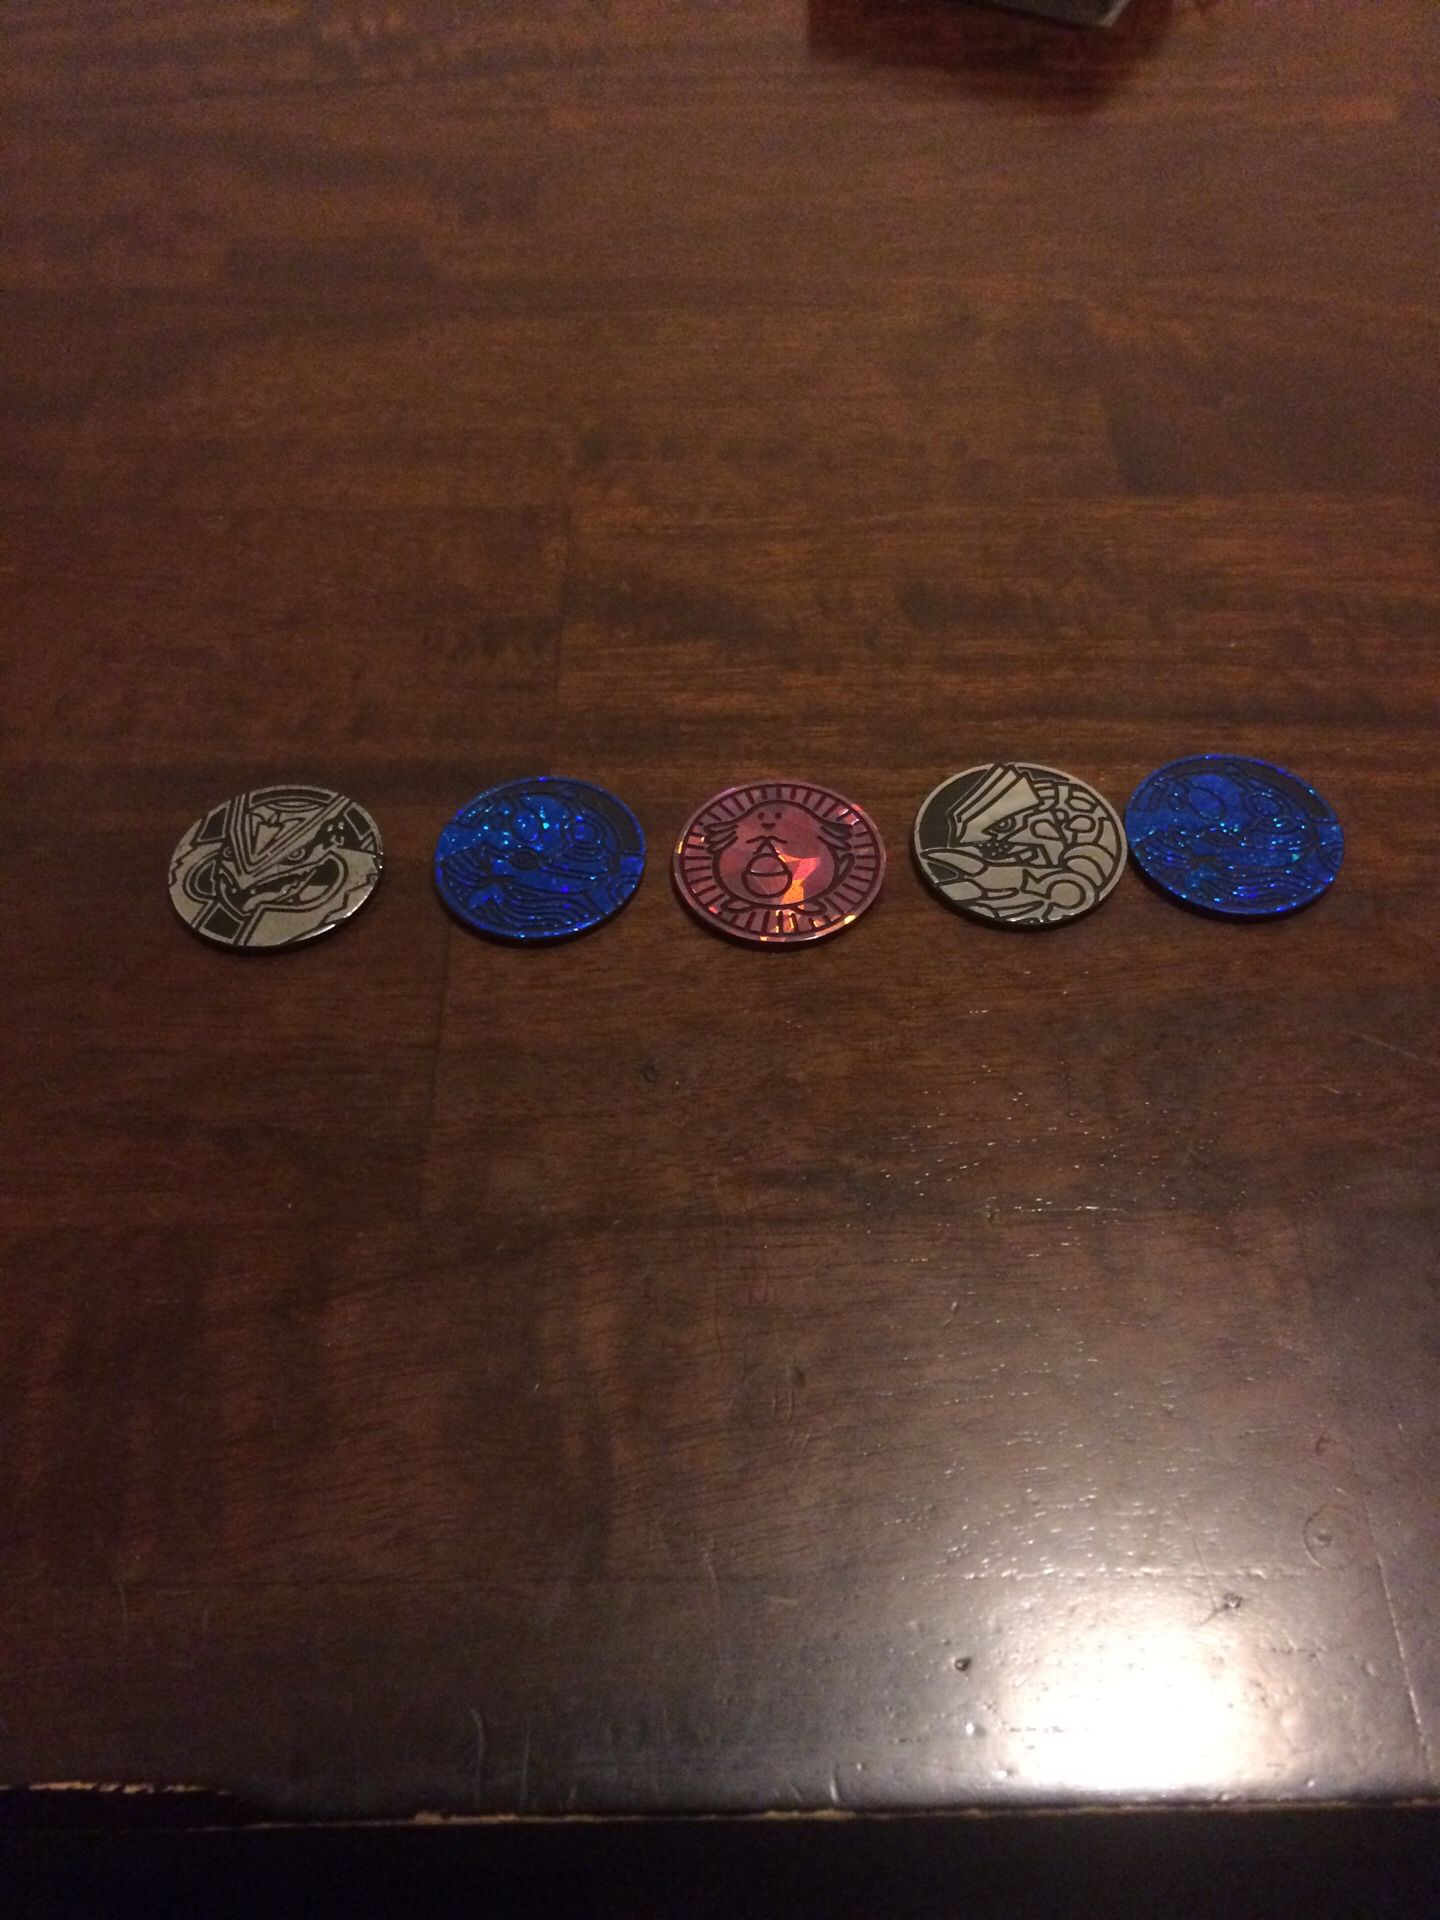 Pokemon coins